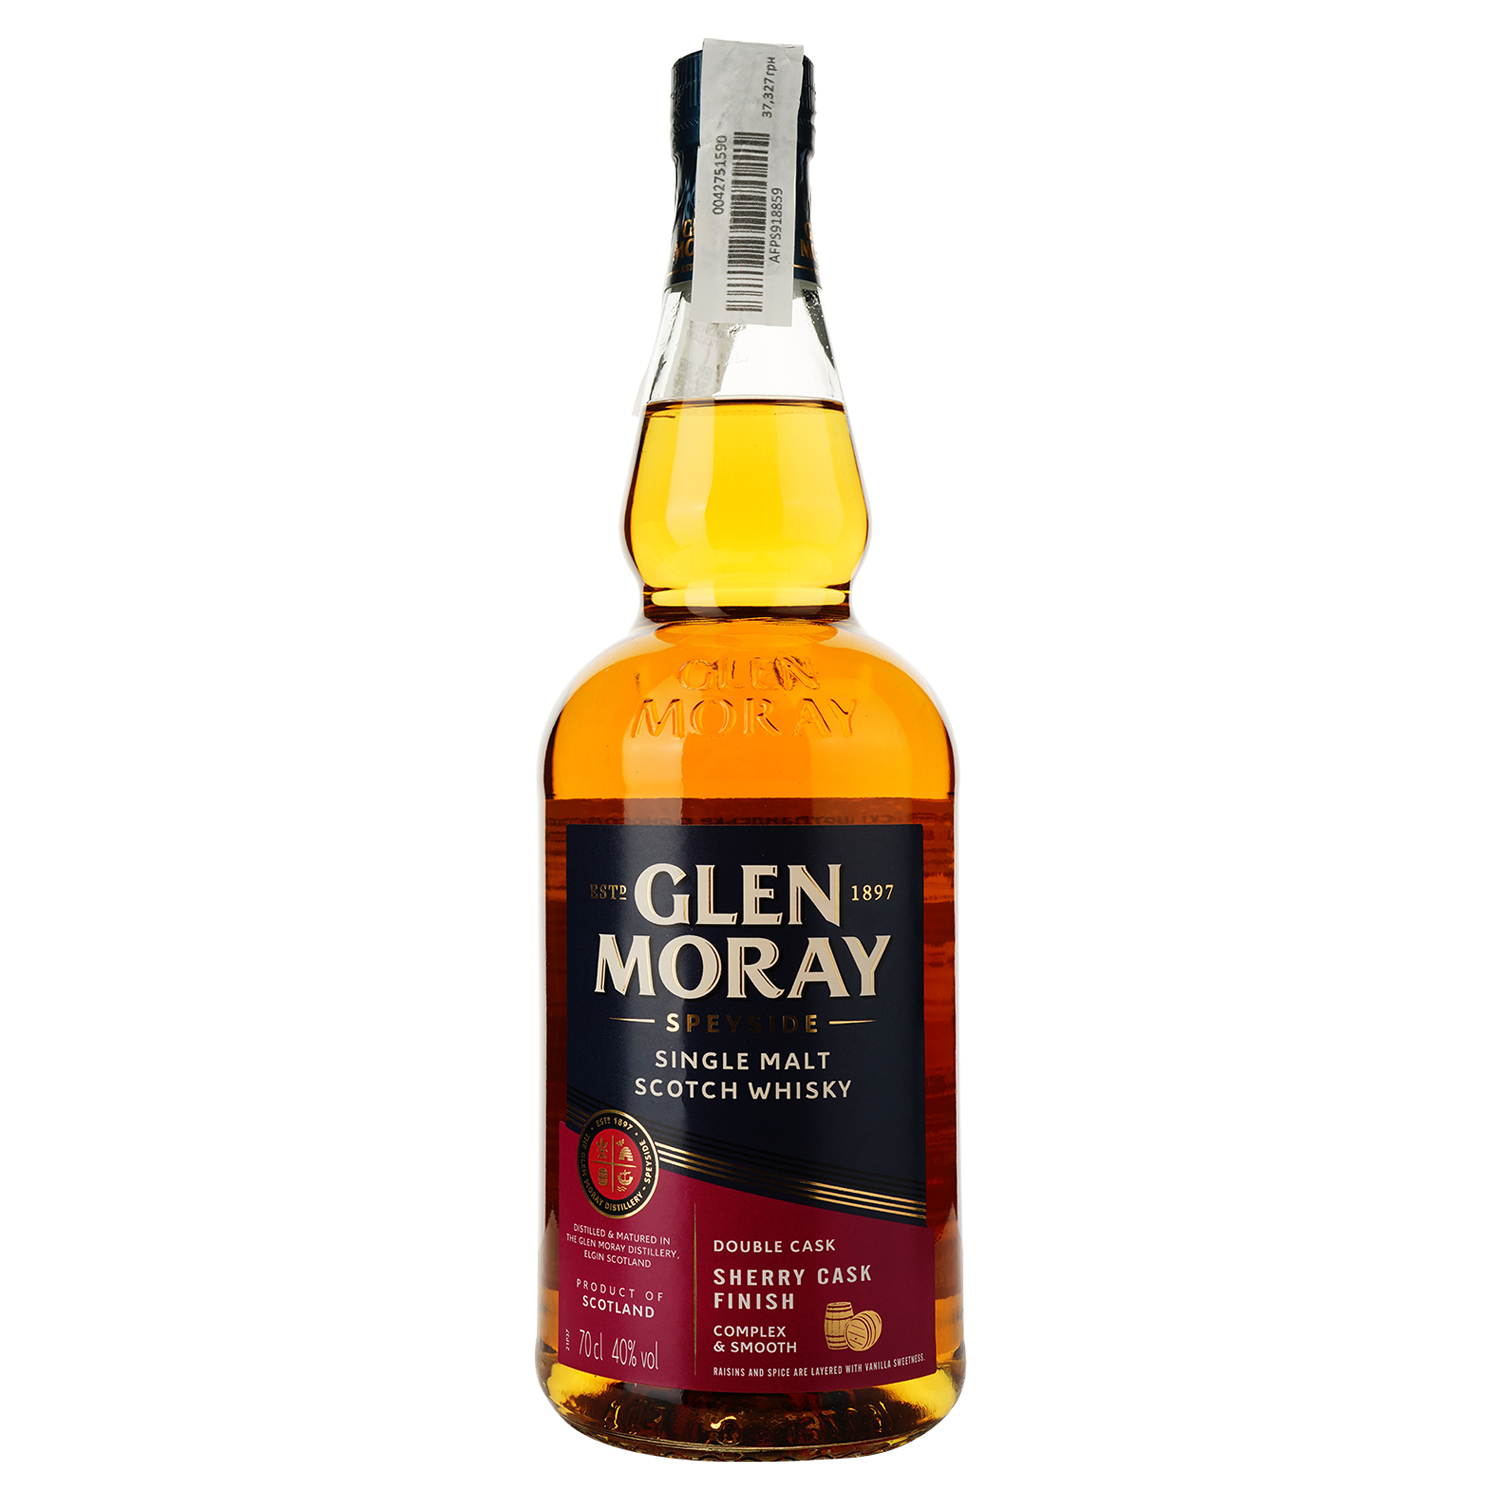 Віскі Glen Moray Single Malt Sherry Cask Finish, в подарунковій упаковці, 40%, 0,7 л (739153) - фото 2